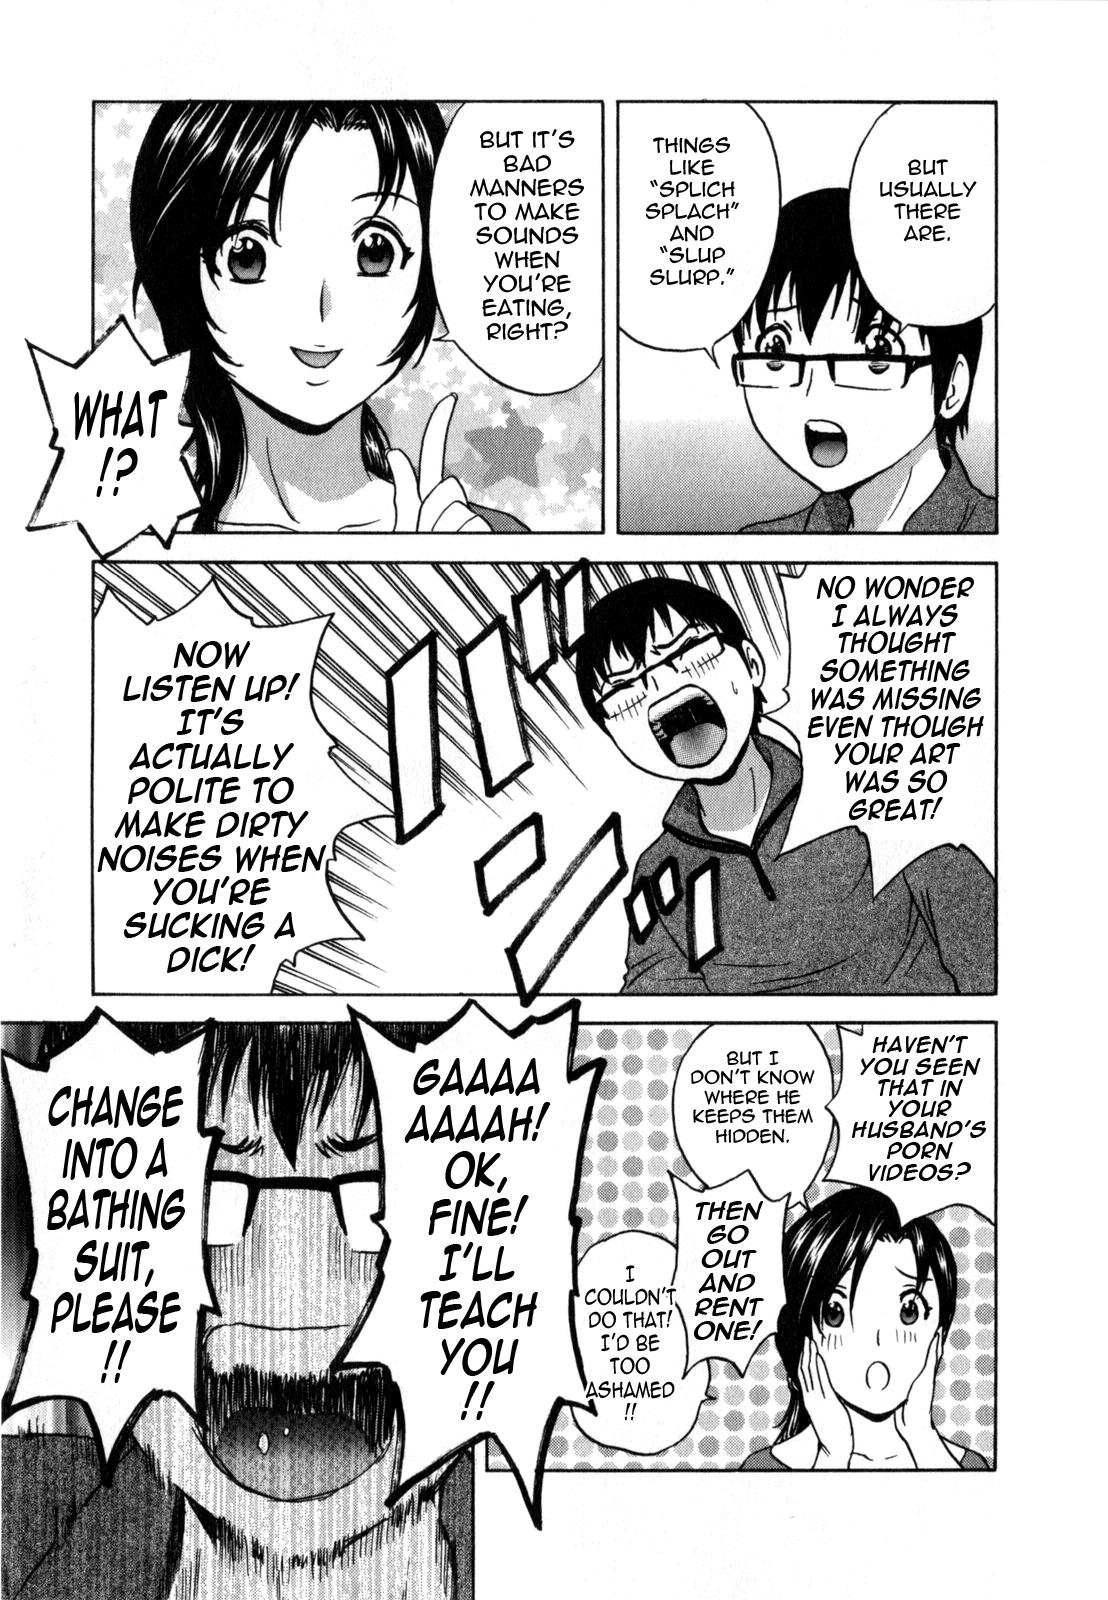 Manga no youna Hitozuma to no Hibi - Days with Married Women such as Comics. 15